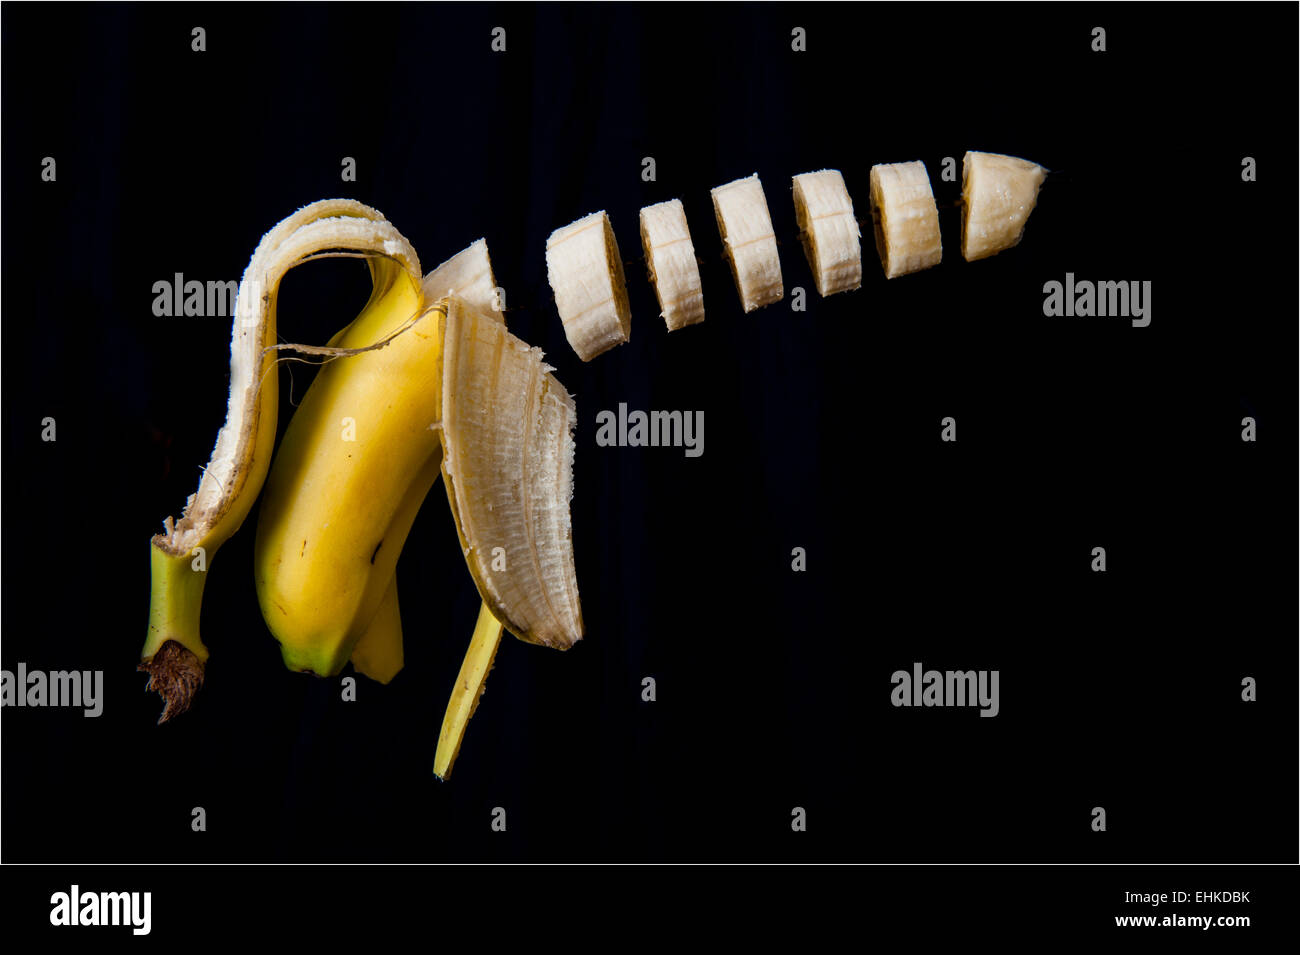 Einem Trick Schuss eine Banane aufgeschnitten und in der Luft vor einem schwarzen Hintergrund schweben Stockfoto